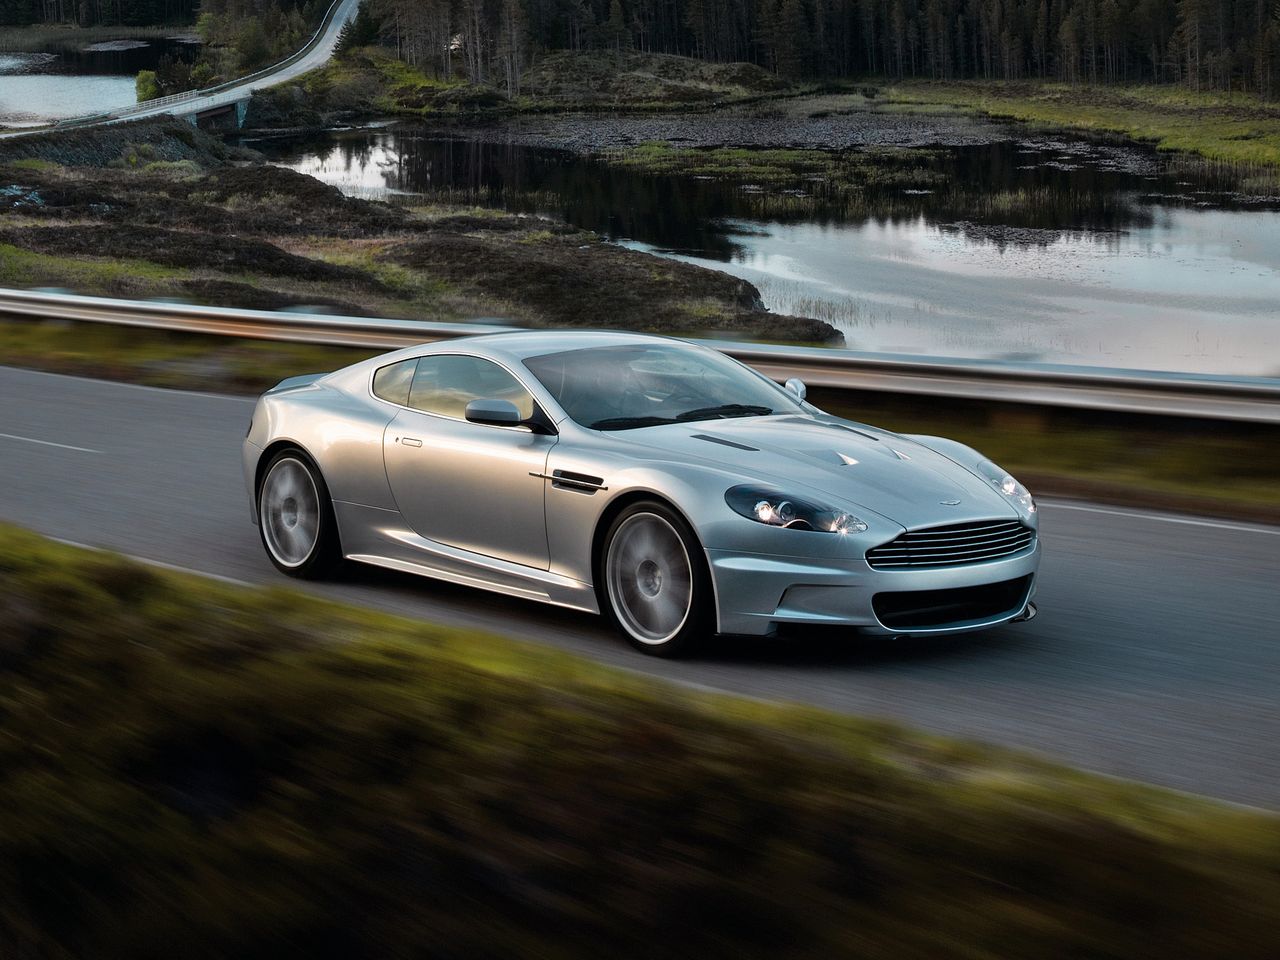 Dalej mamy samochód Jamesa Bonda. Aston Martin DBS, bo o nim mowa, dysponuje potężnym V12 o pojemności 5,9 l. 517 KM generowane przez tę wolnossącą bestię rozpędzają ją do 100 km/h w 4,3 s.